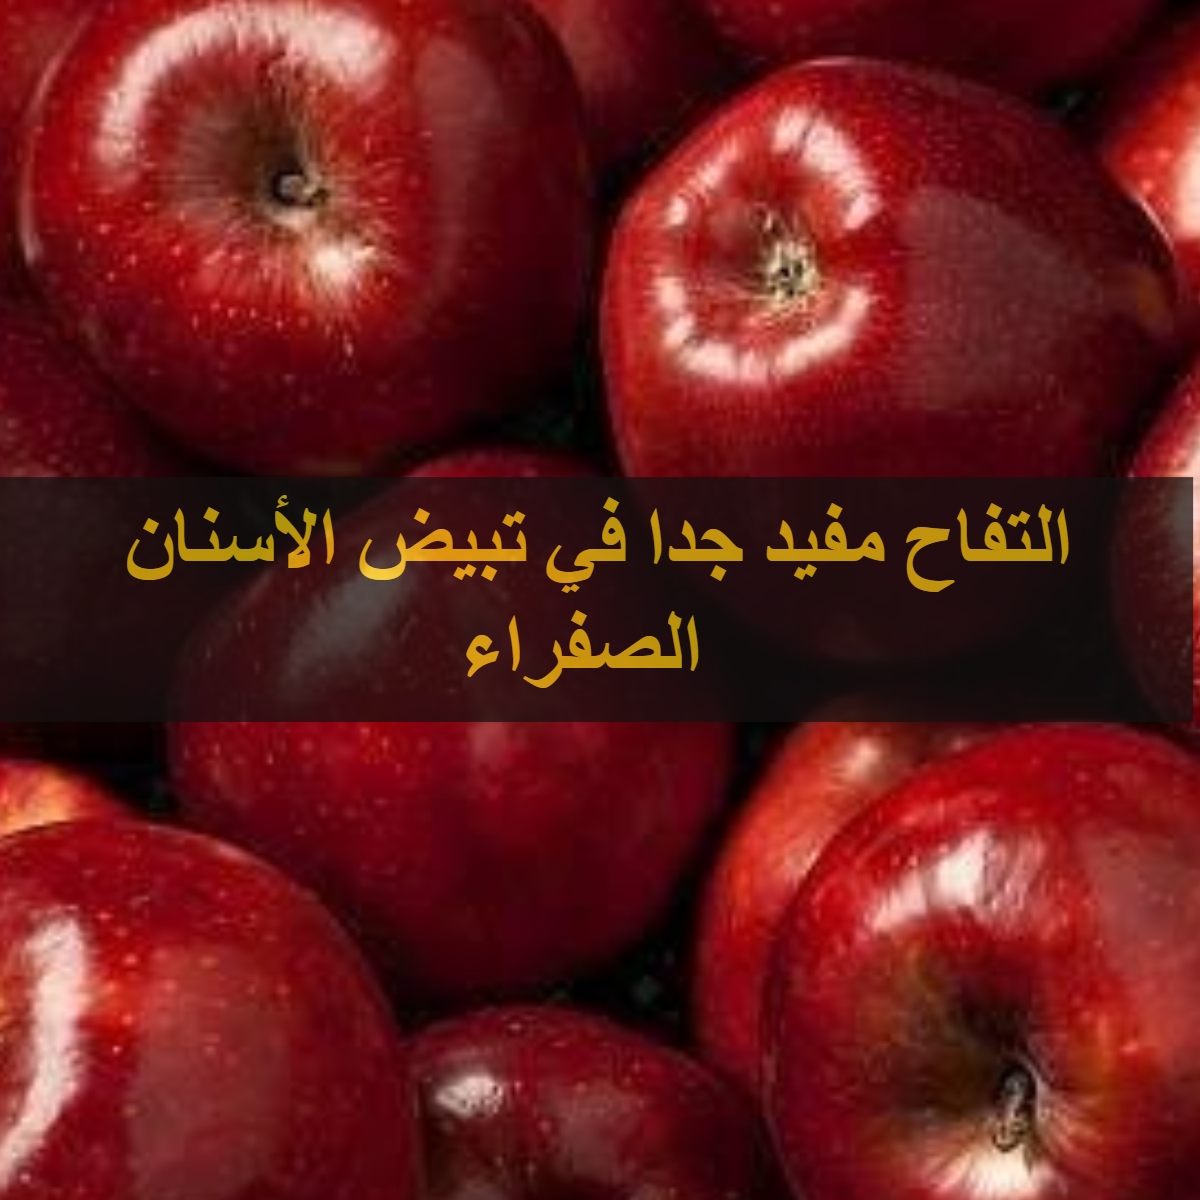 التفاح مفيد جدًا في تبيض الأسنان الصفراء